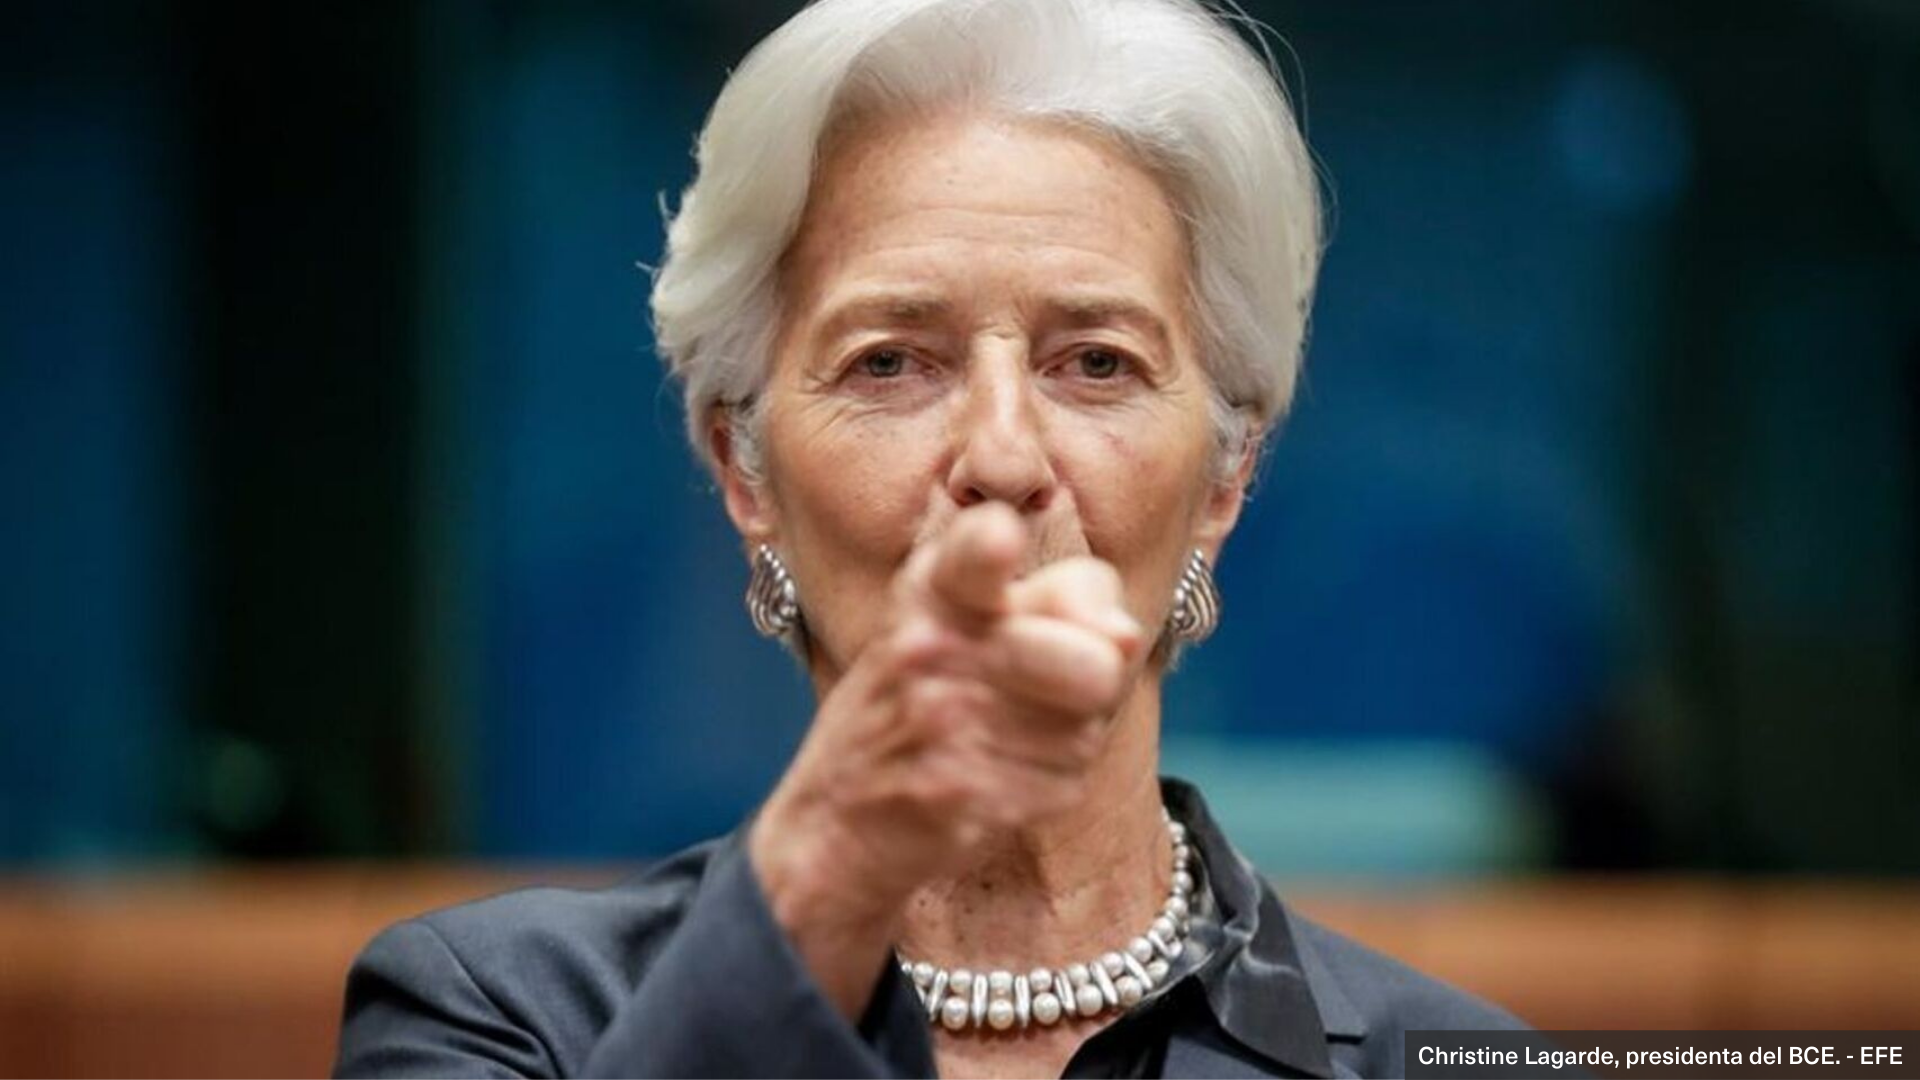 Lagarde da un golpe de mano ante el COVID19: en tiempos extraordinarios, acciones extraordinarias